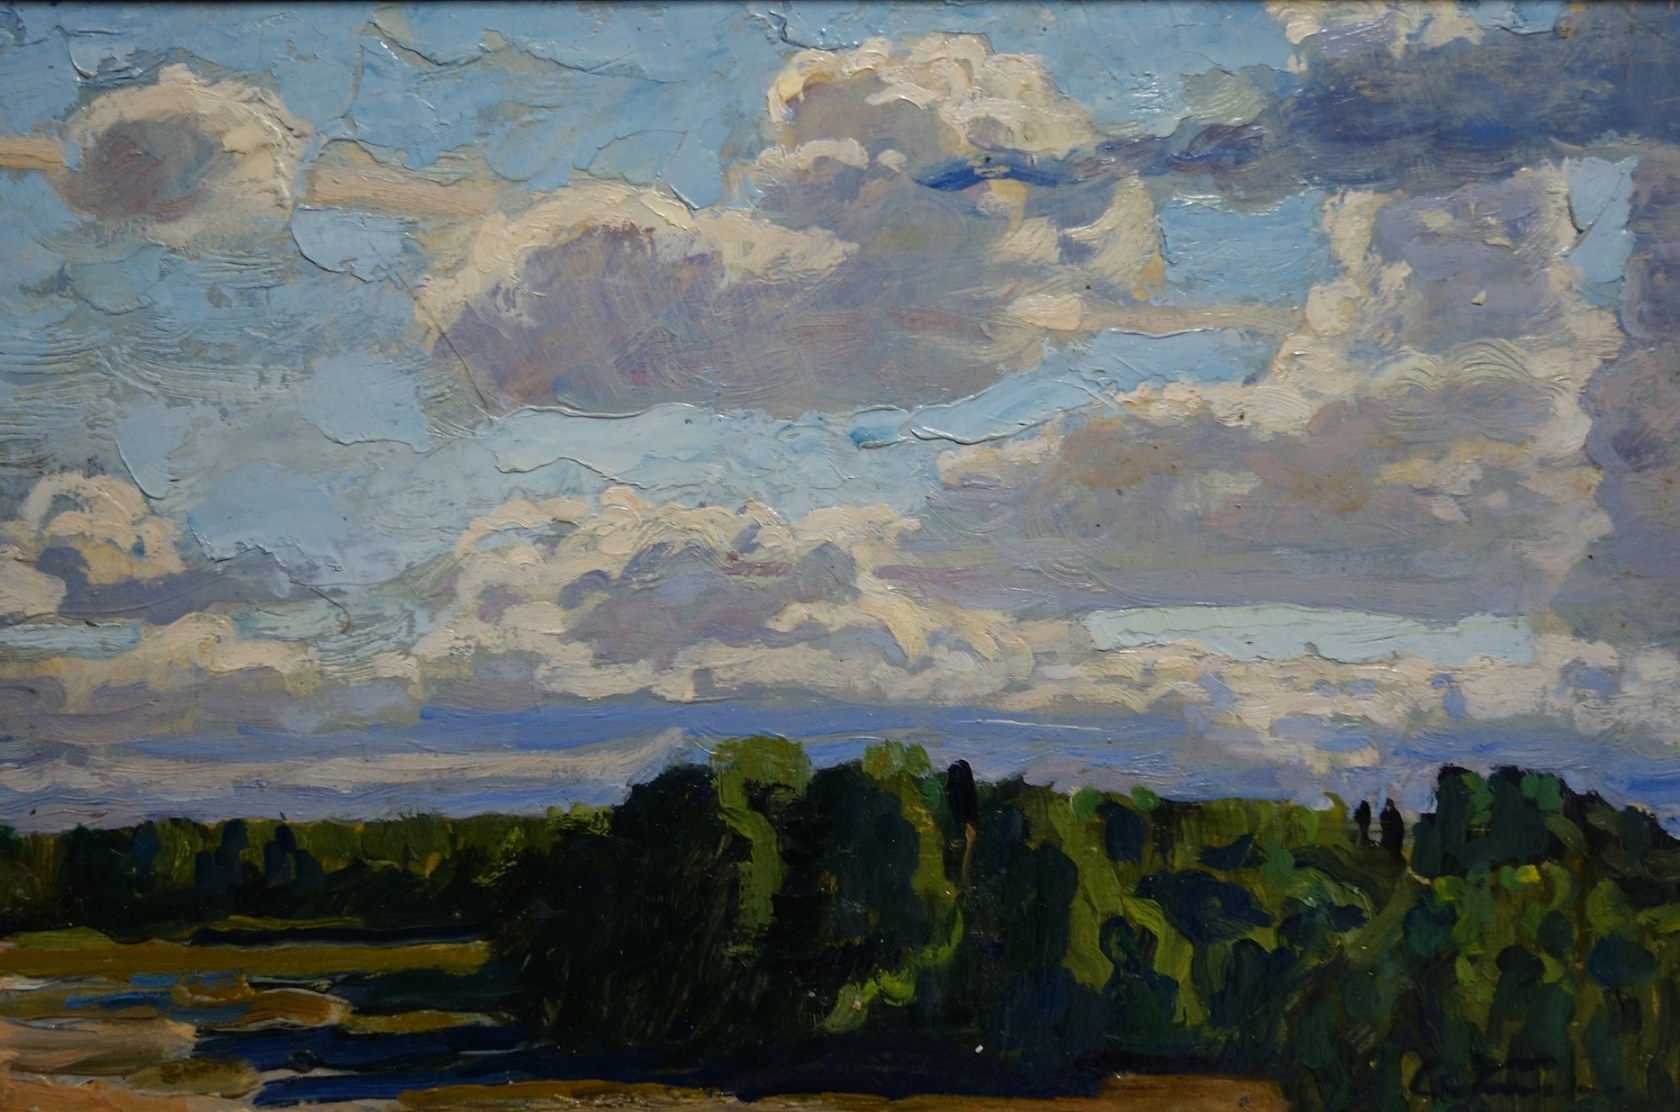 Tkacev, fratelli, nuvole, pittura russa, post-impressionismo russo, paesaggio, realismo sovietico